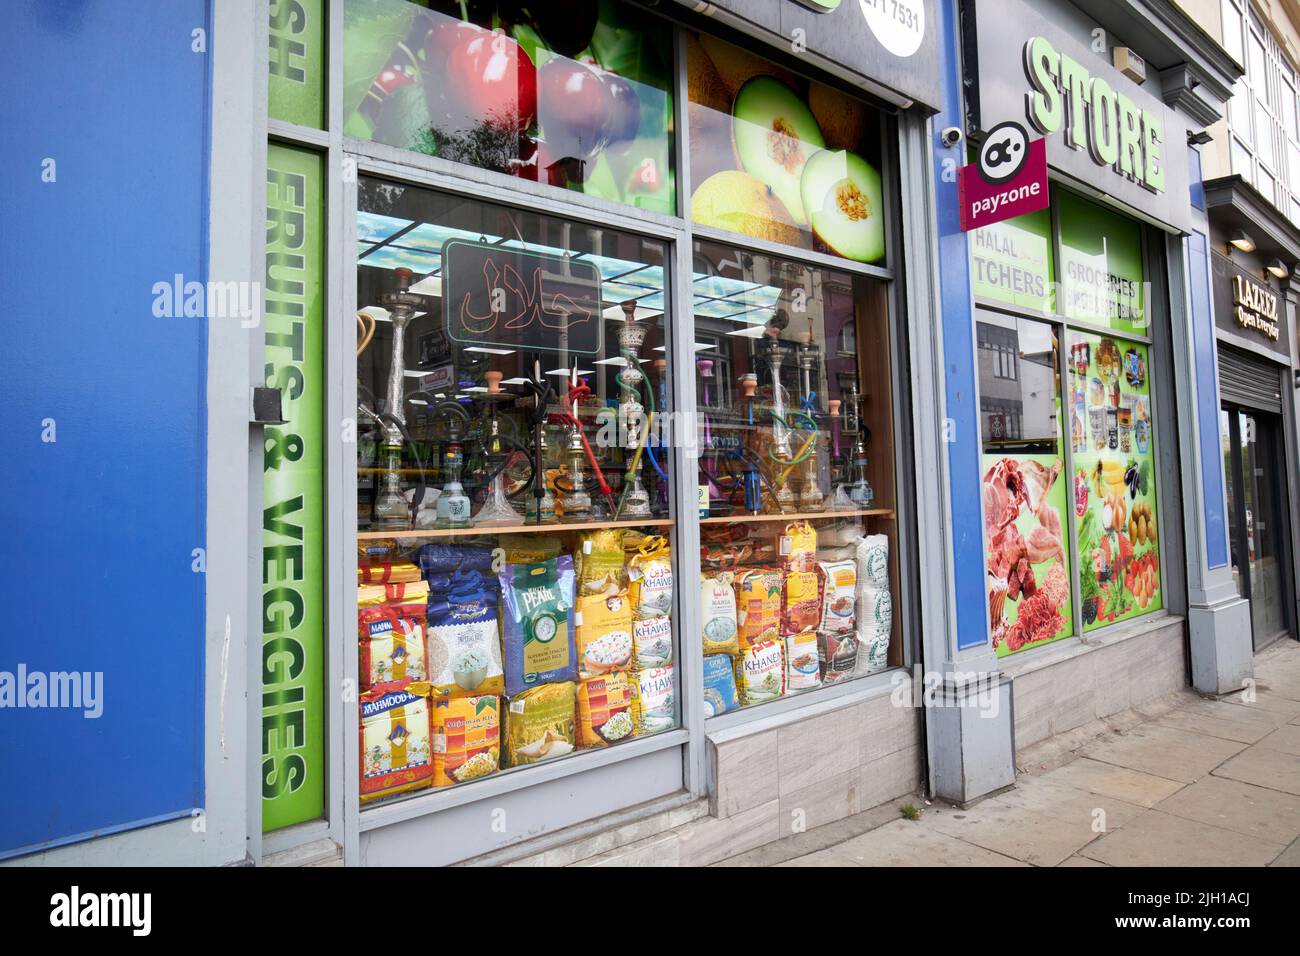 Negozi alimentari e negozi di immigrati london Road Liverpool Inghilterra UK Foto Stock